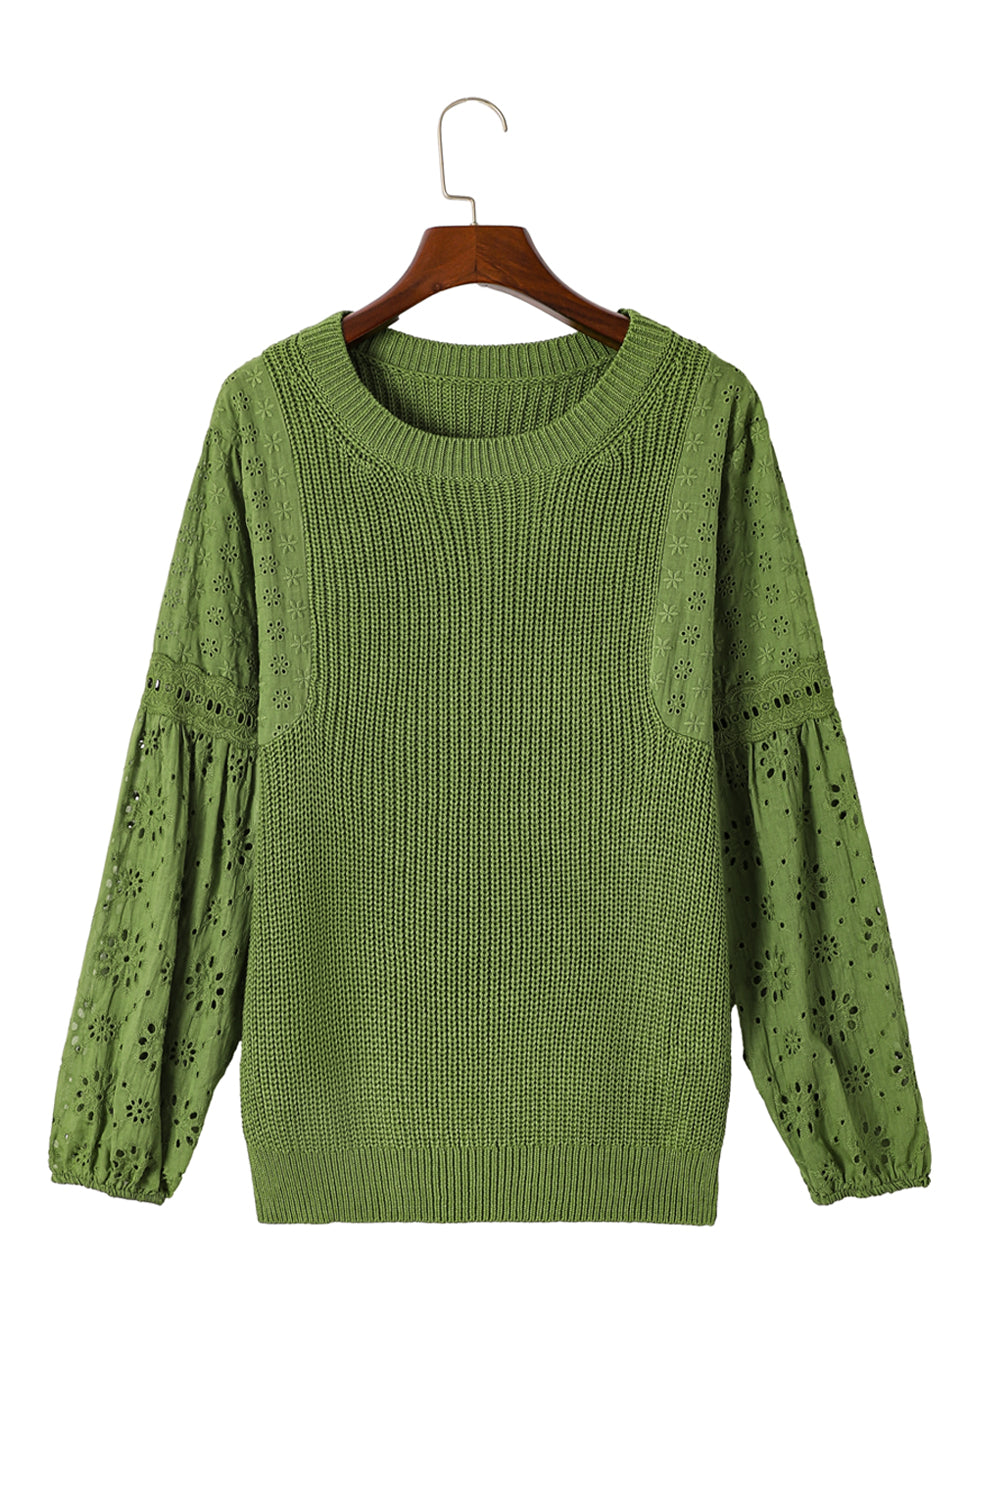 Zelen pulover pulover s spuščenimi rameni z očesci